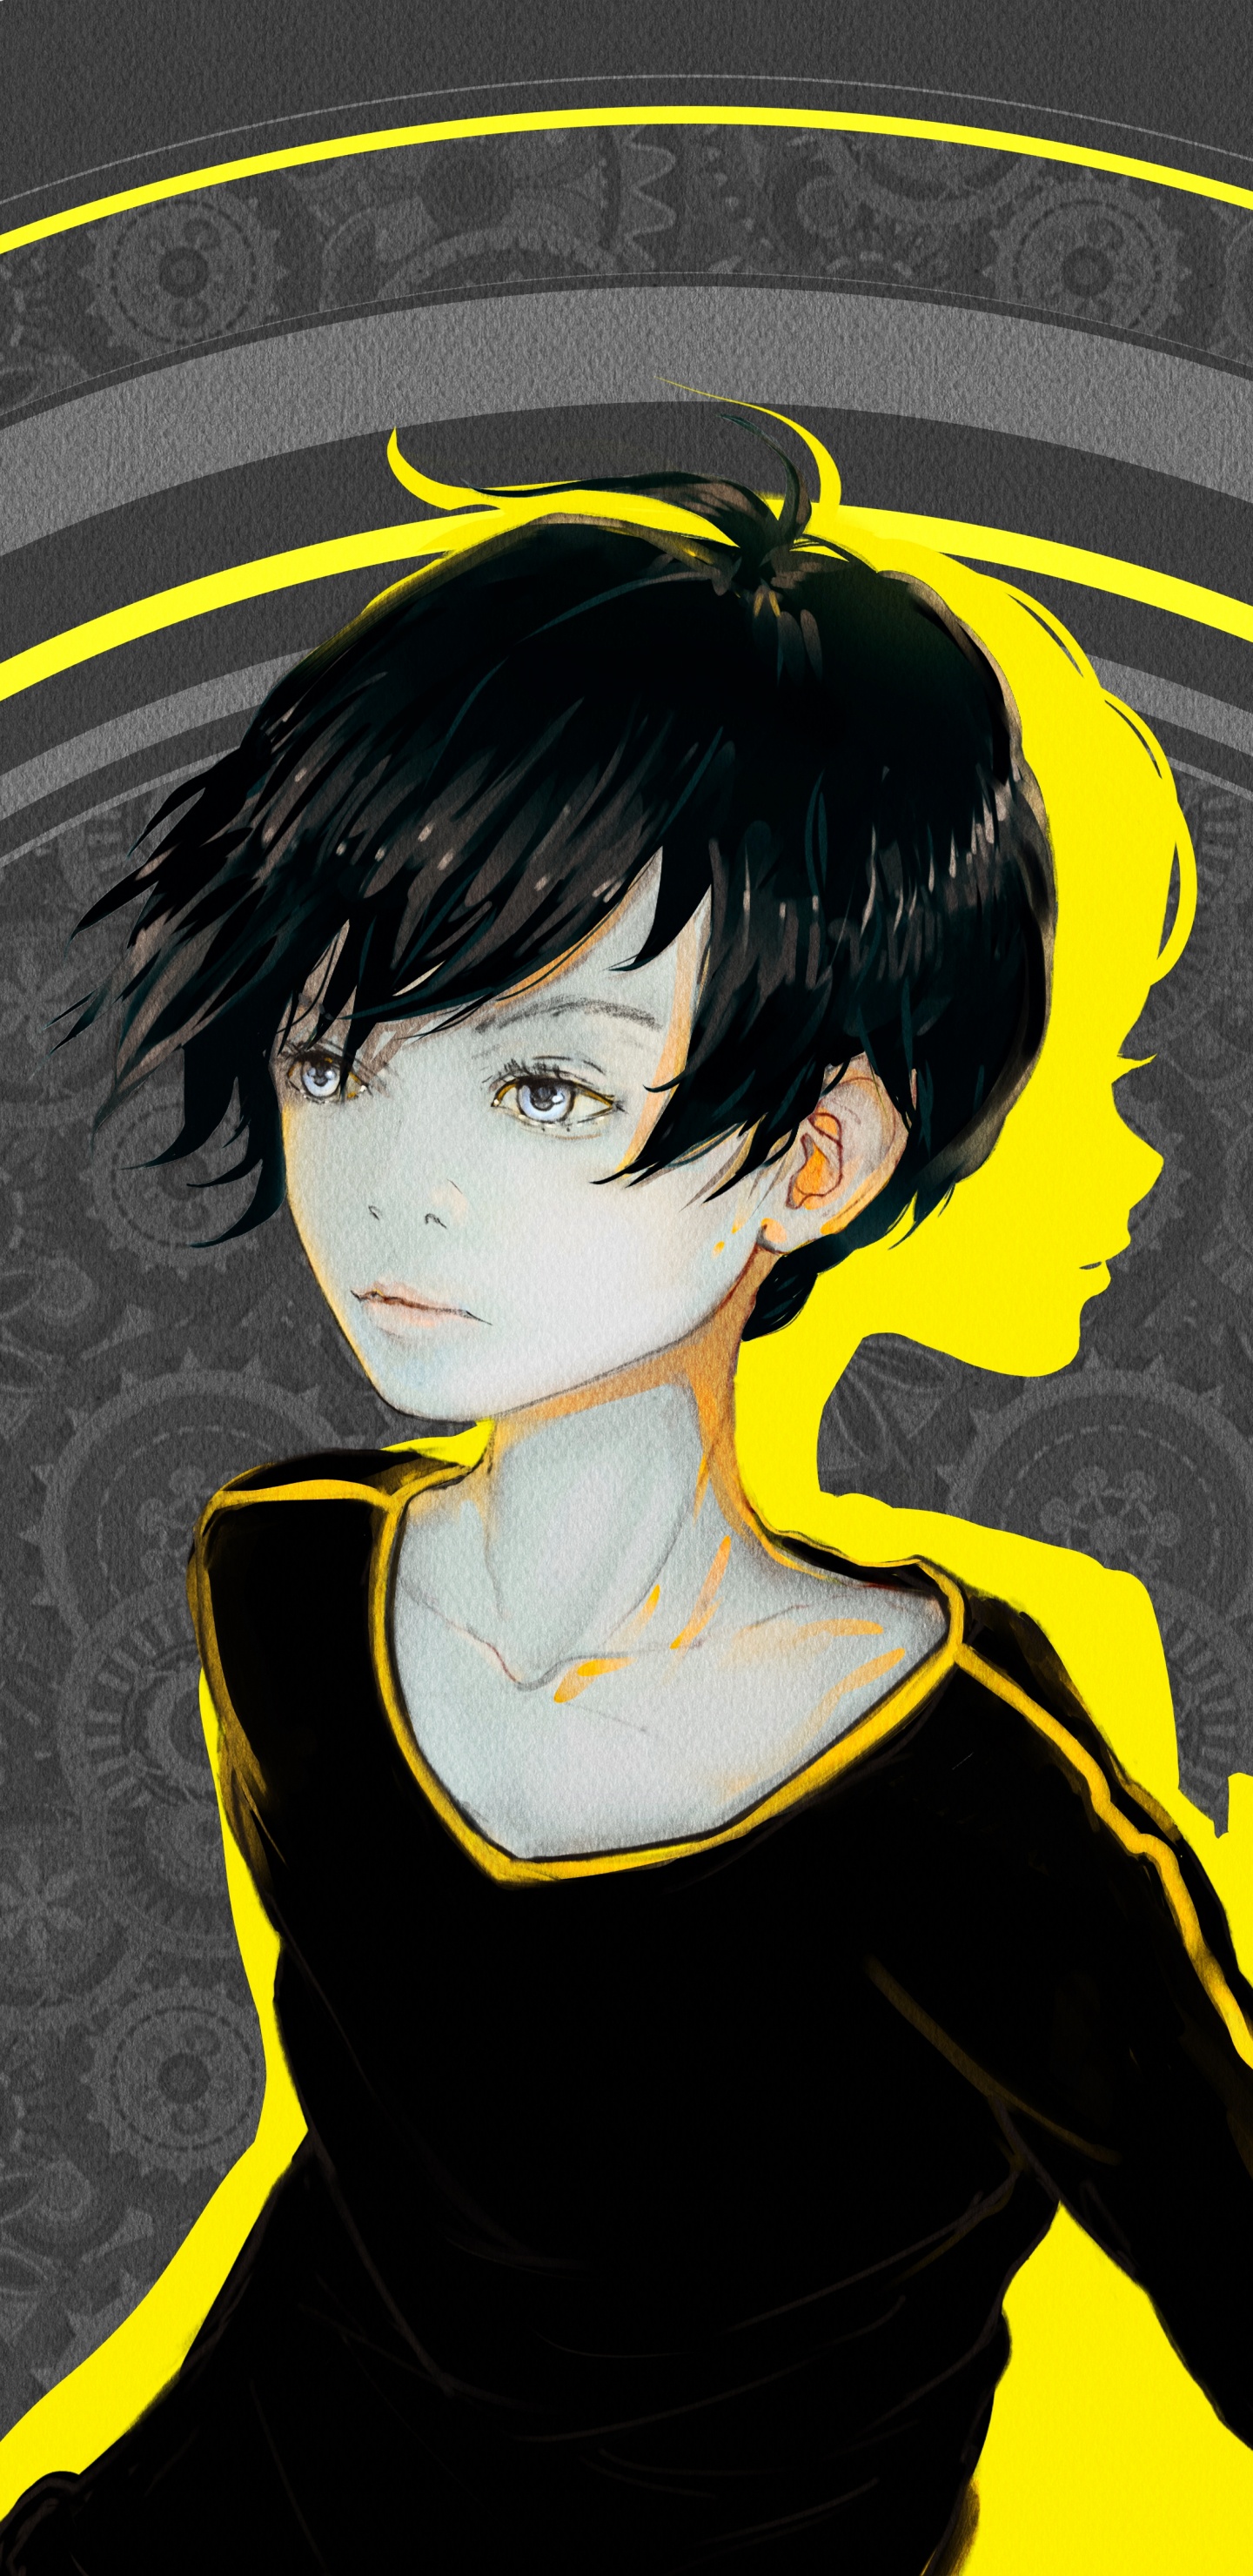 Personaje de Anime Masculino de Pelo Negro. Wallpaper in 1440x2960 Resolution